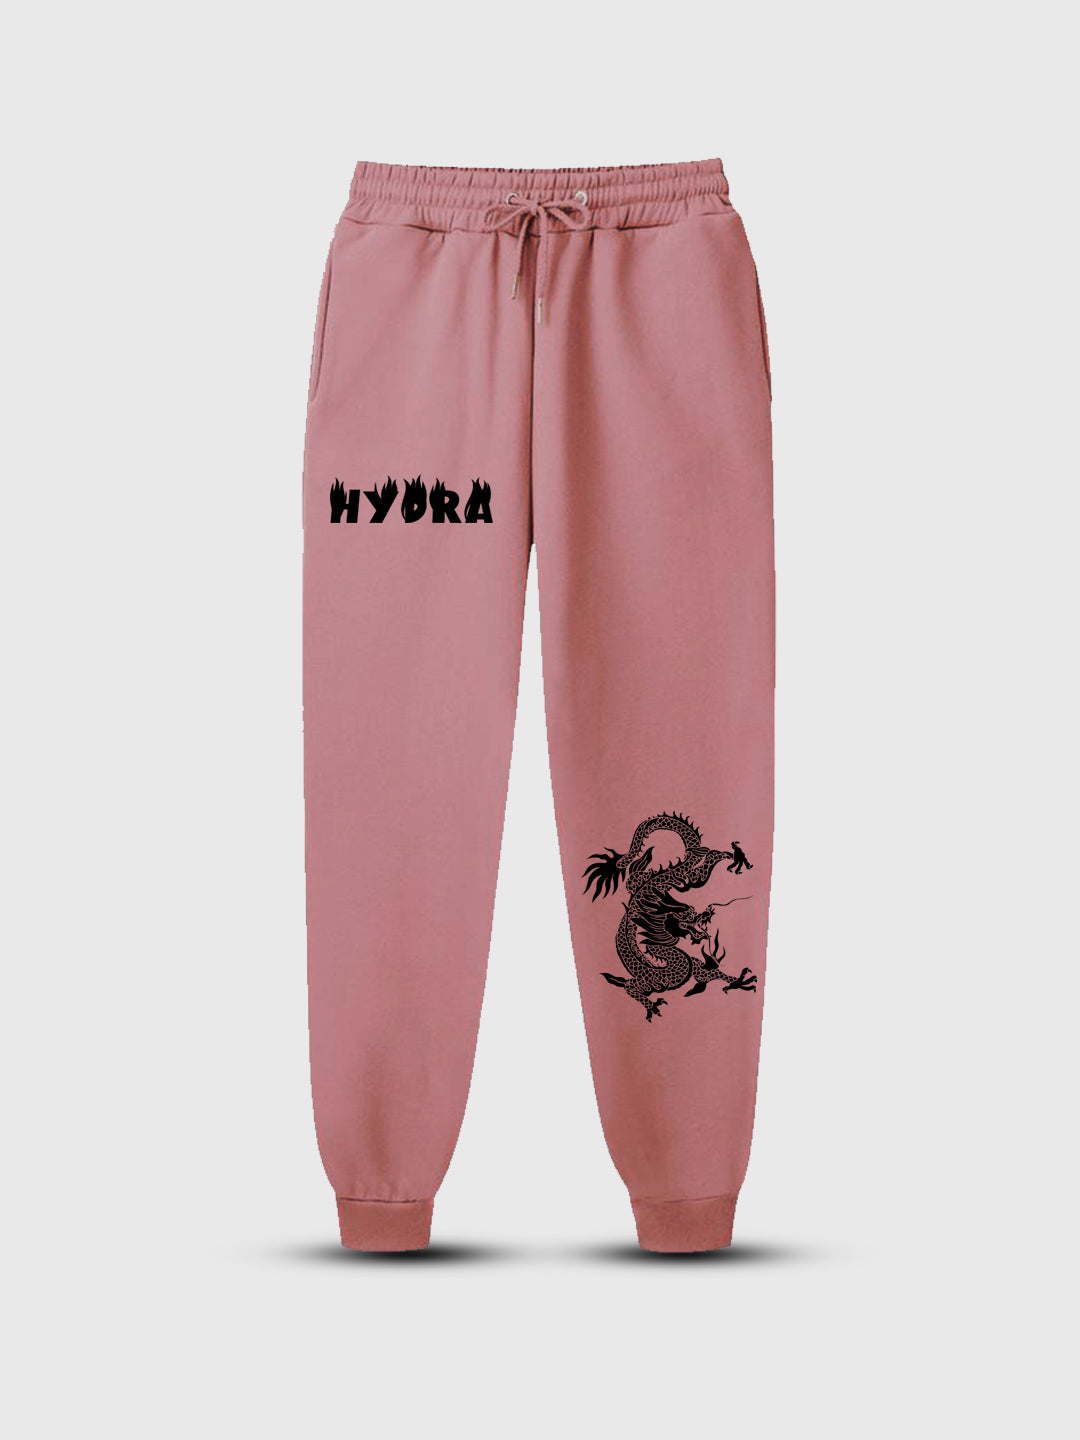 Men' Hydra  Printed Prime Trouser